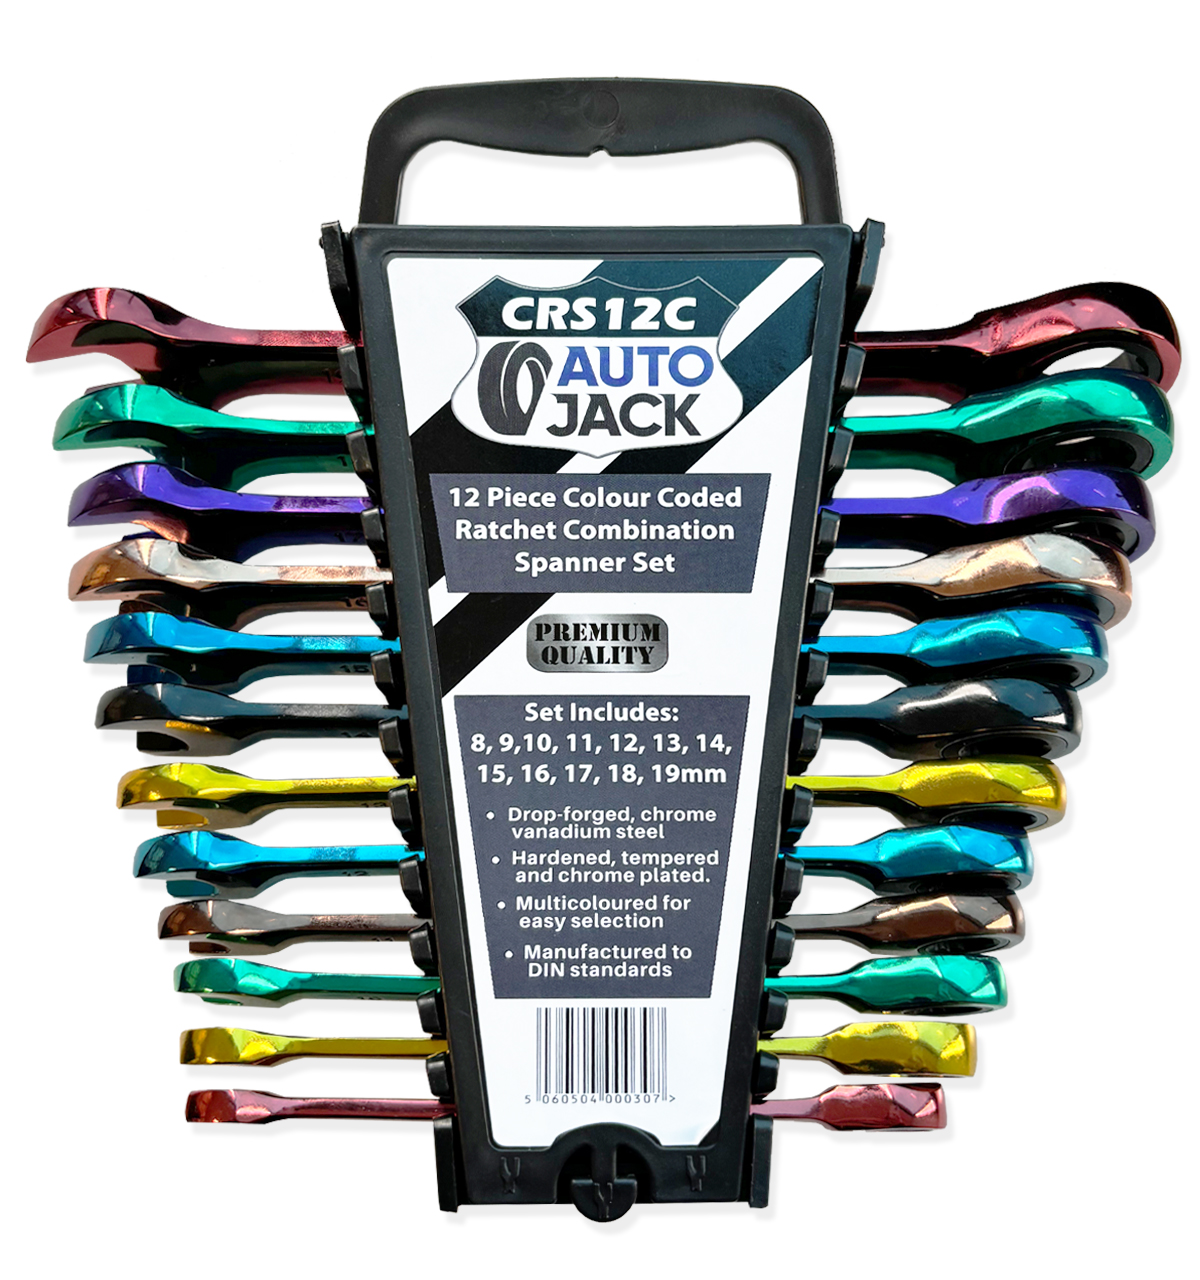 Autojack 12 Piece Multi-coloured Ratchet Spanner Set